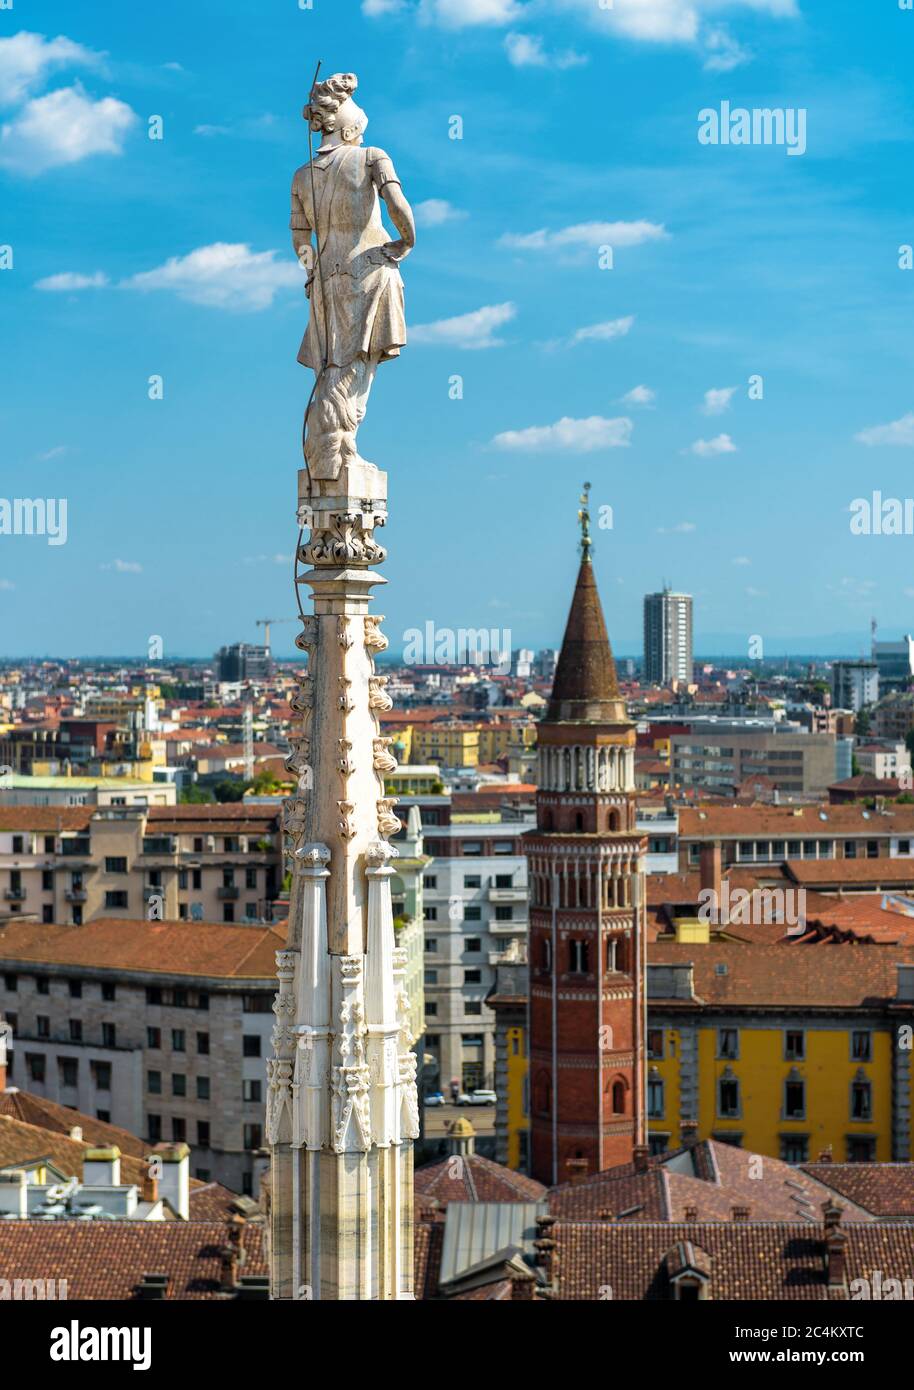 Statue sur la flèche de la cathédrale de Milan sur fond bleu ciel, Milan, Italie. Détail du toit gothique surplombant la ville de Milan en été. Belle vue sur Milan f Banque D'Images